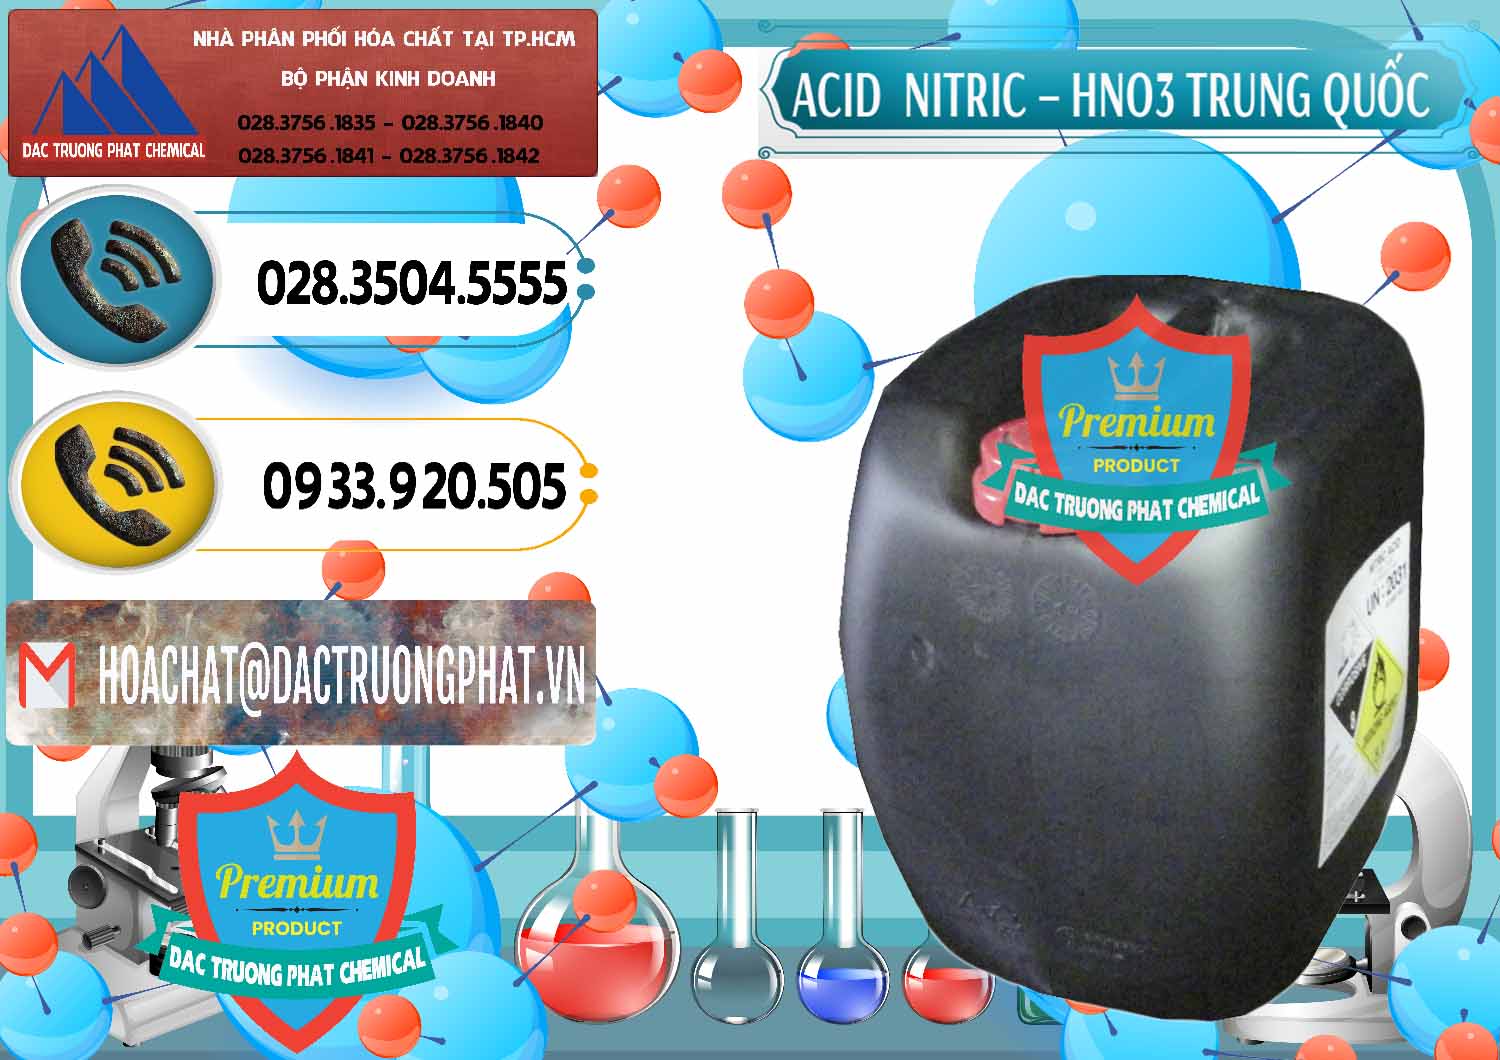 Công ty bán & cung cấp Acid Nitric – Axit Nitric HNO3 68% Trung Quốc China - 0343 - Đơn vị cung cấp và kinh doanh hóa chất tại TP.HCM - hoachatdetnhuom.vn